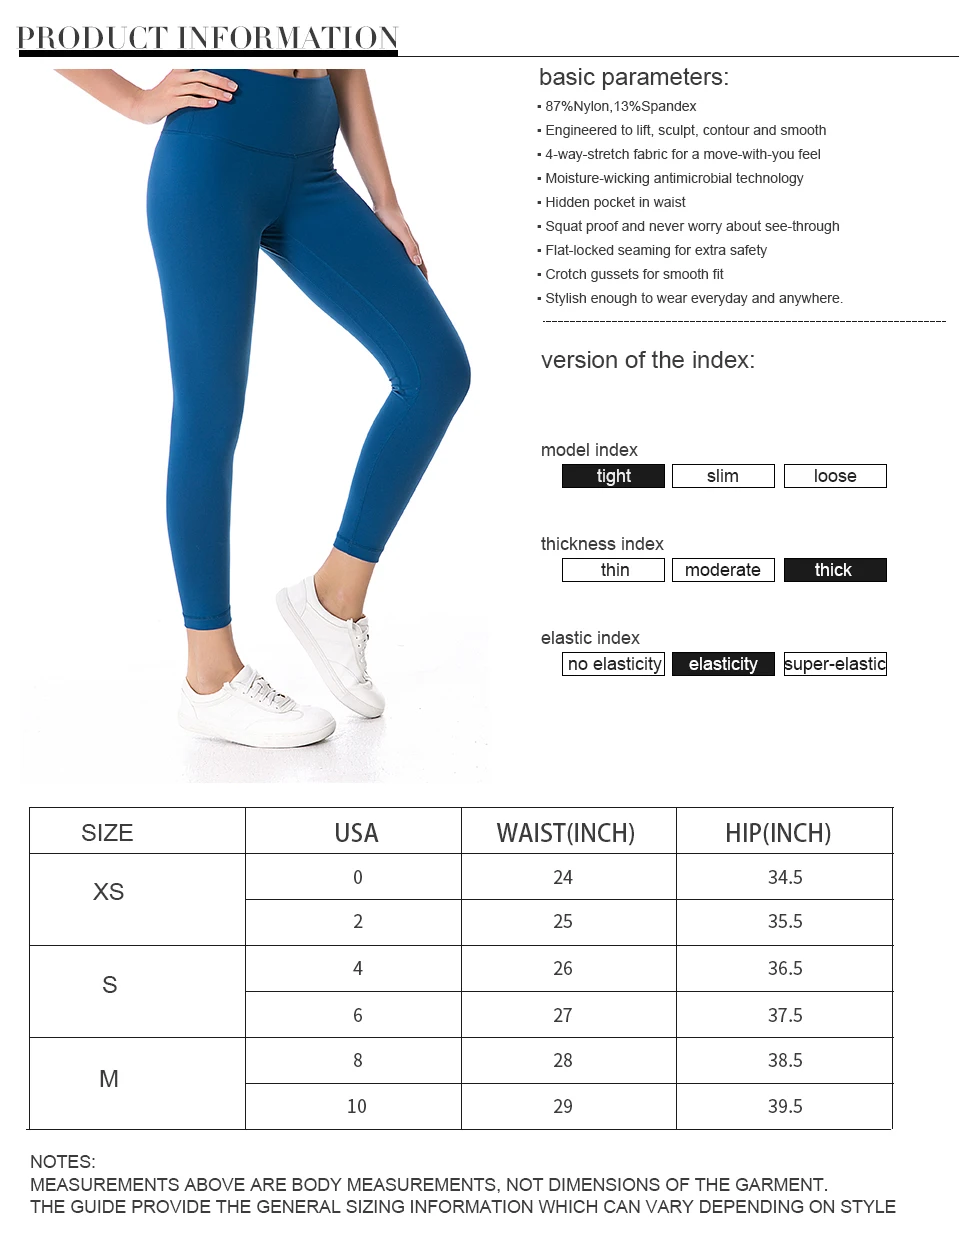 Nepoagym женские Леггинсы для йоги, устойчивые к приседанию штаны для йоги со скрытым карманом, спортивные колготки, влагоотводящие штаны для фитнеса